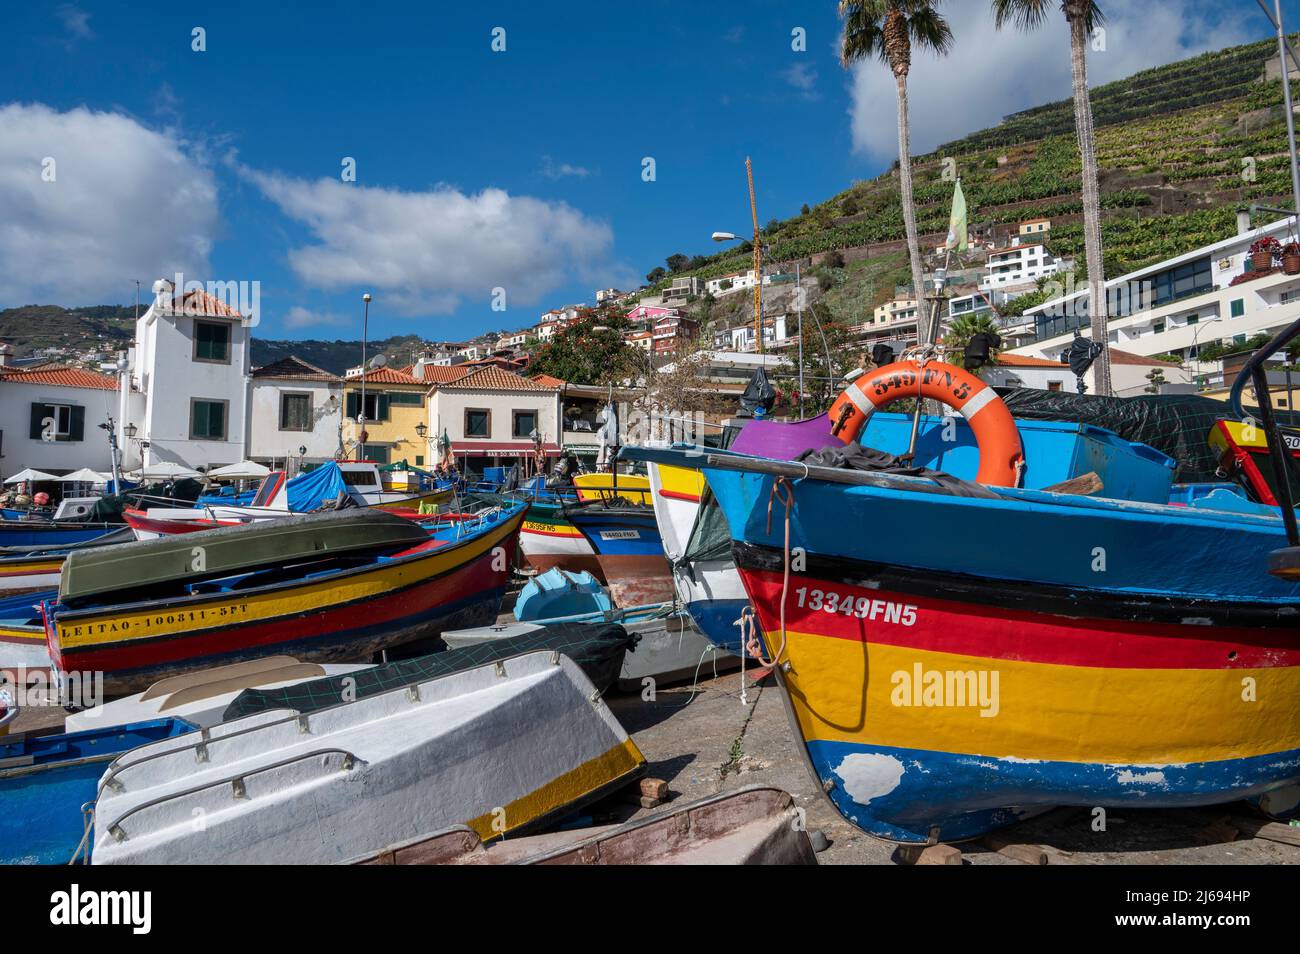 Bateaux colorés, Camara de Lobos, Funchal, Madère, Portugal, Atlantique, Europe Banque D'Images